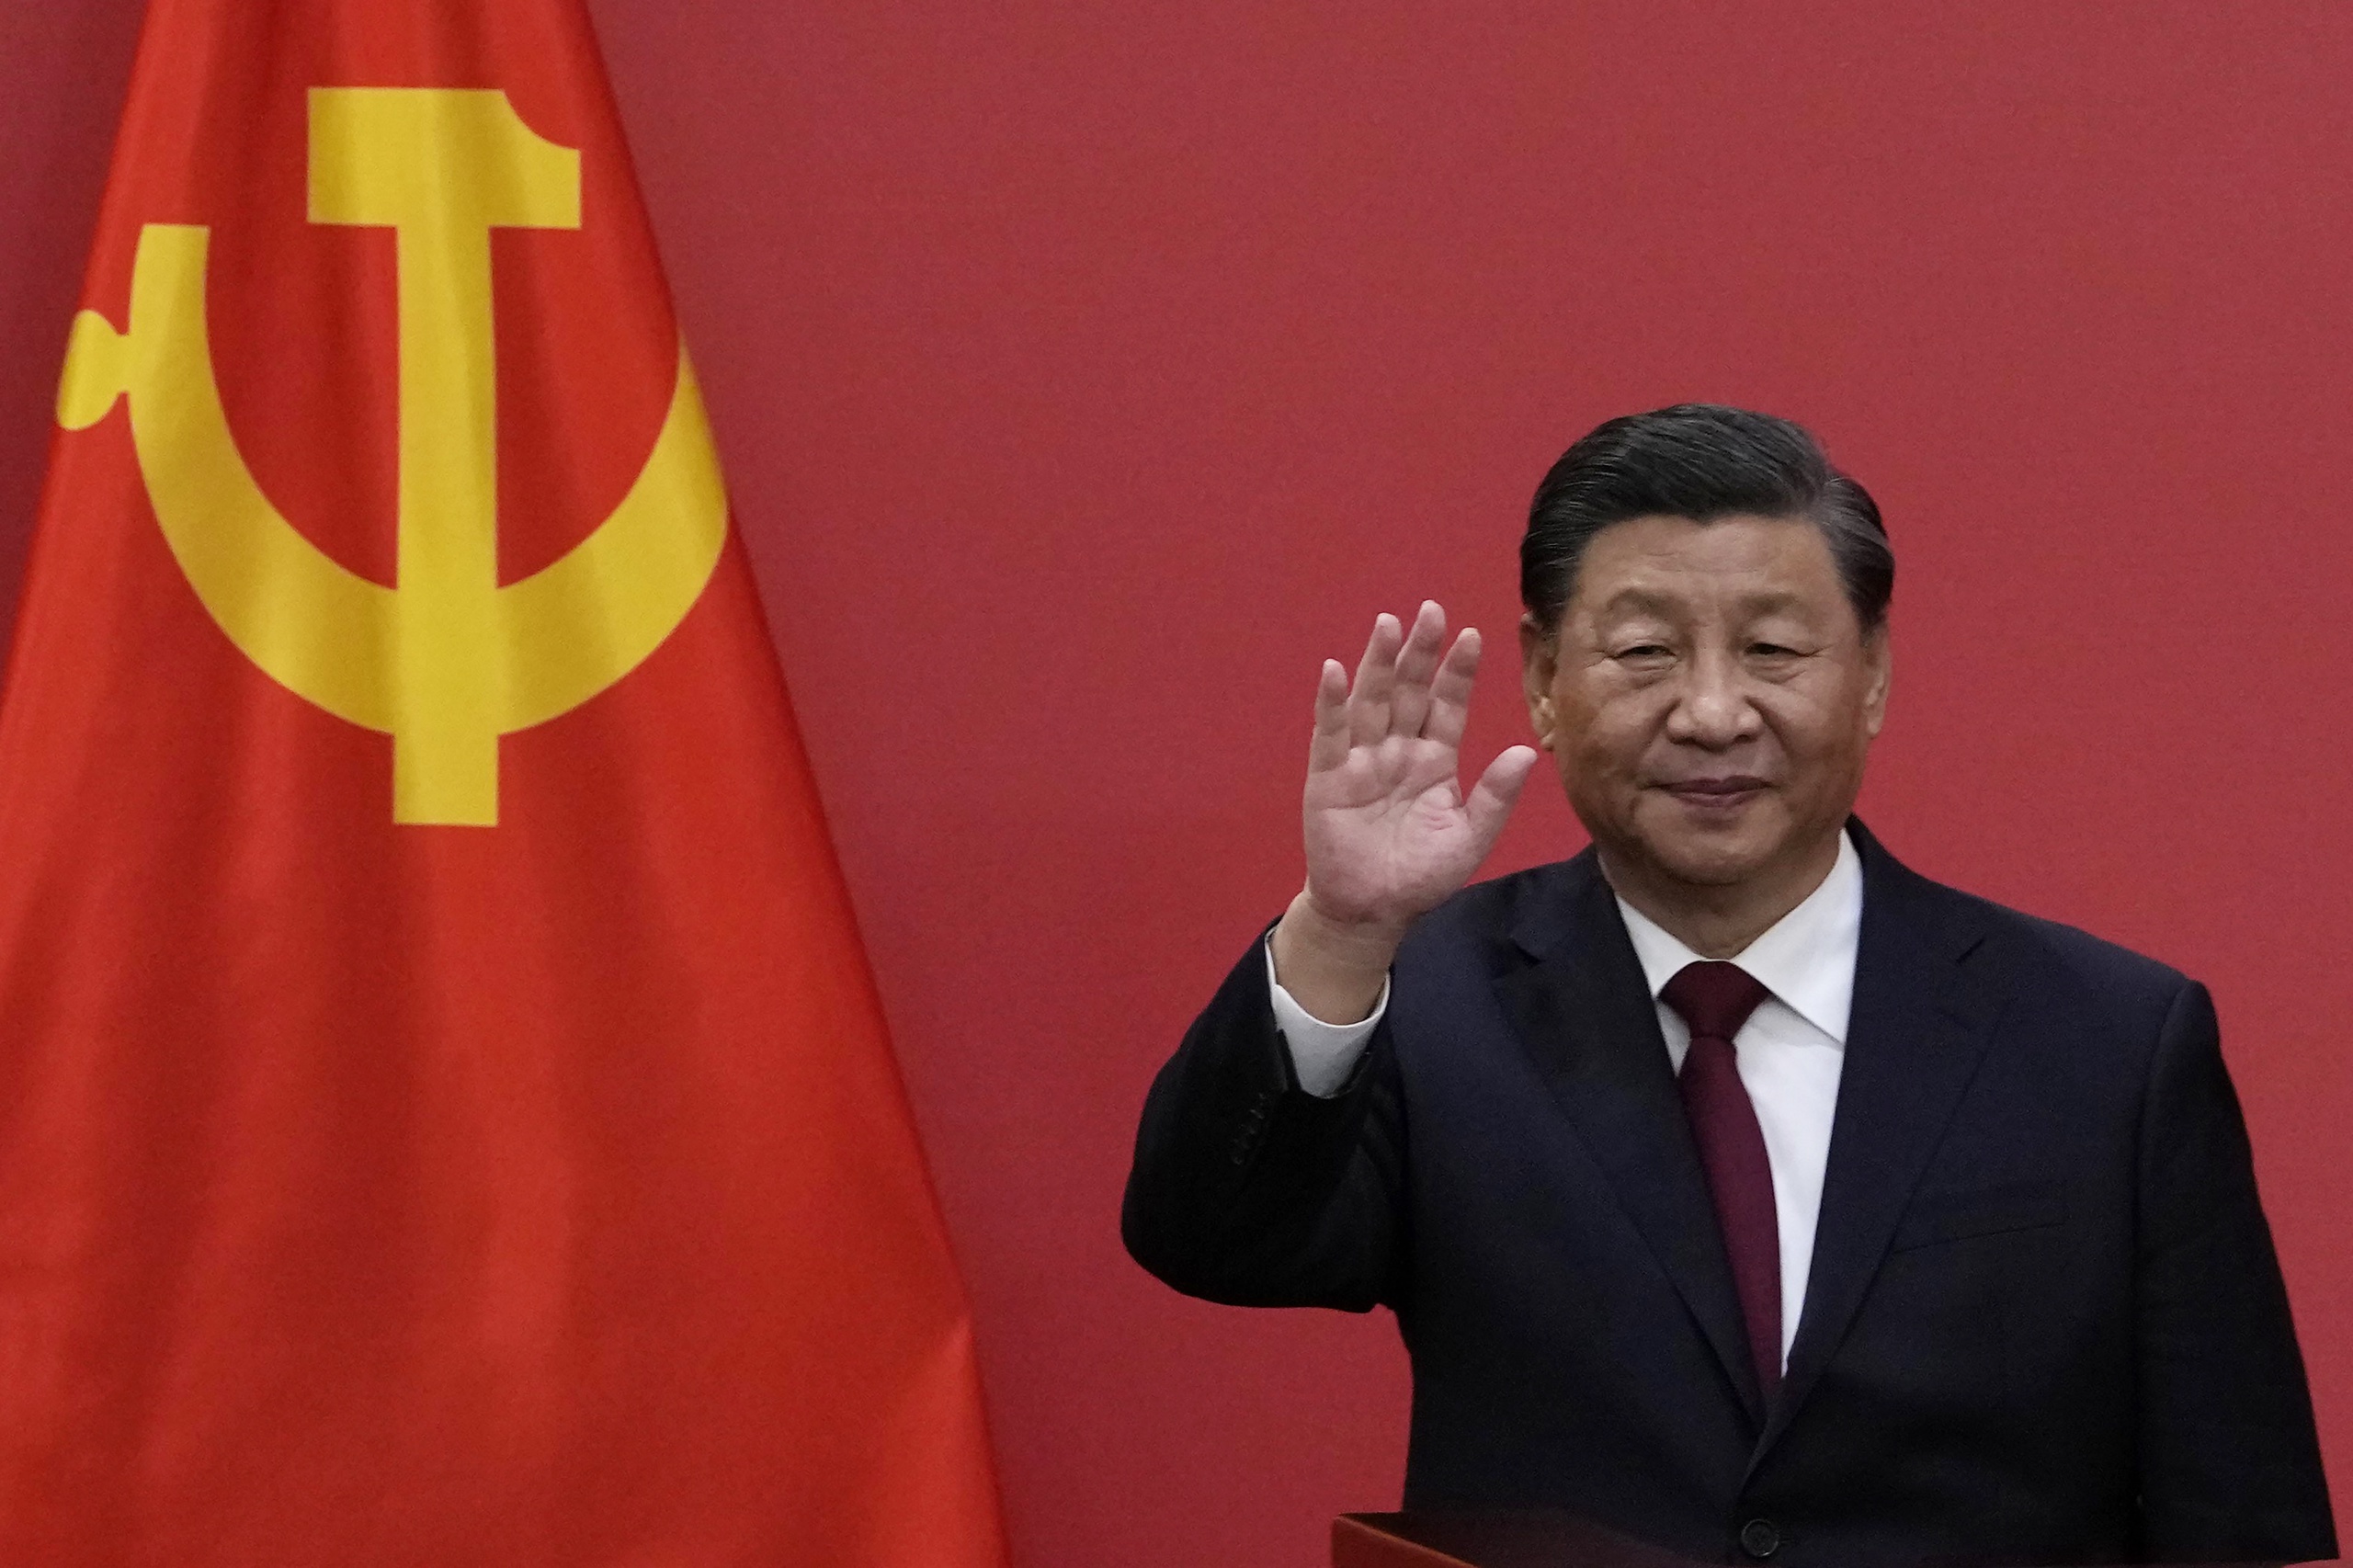 De Chinese president is voor de derde keer verkozen als leider van China.